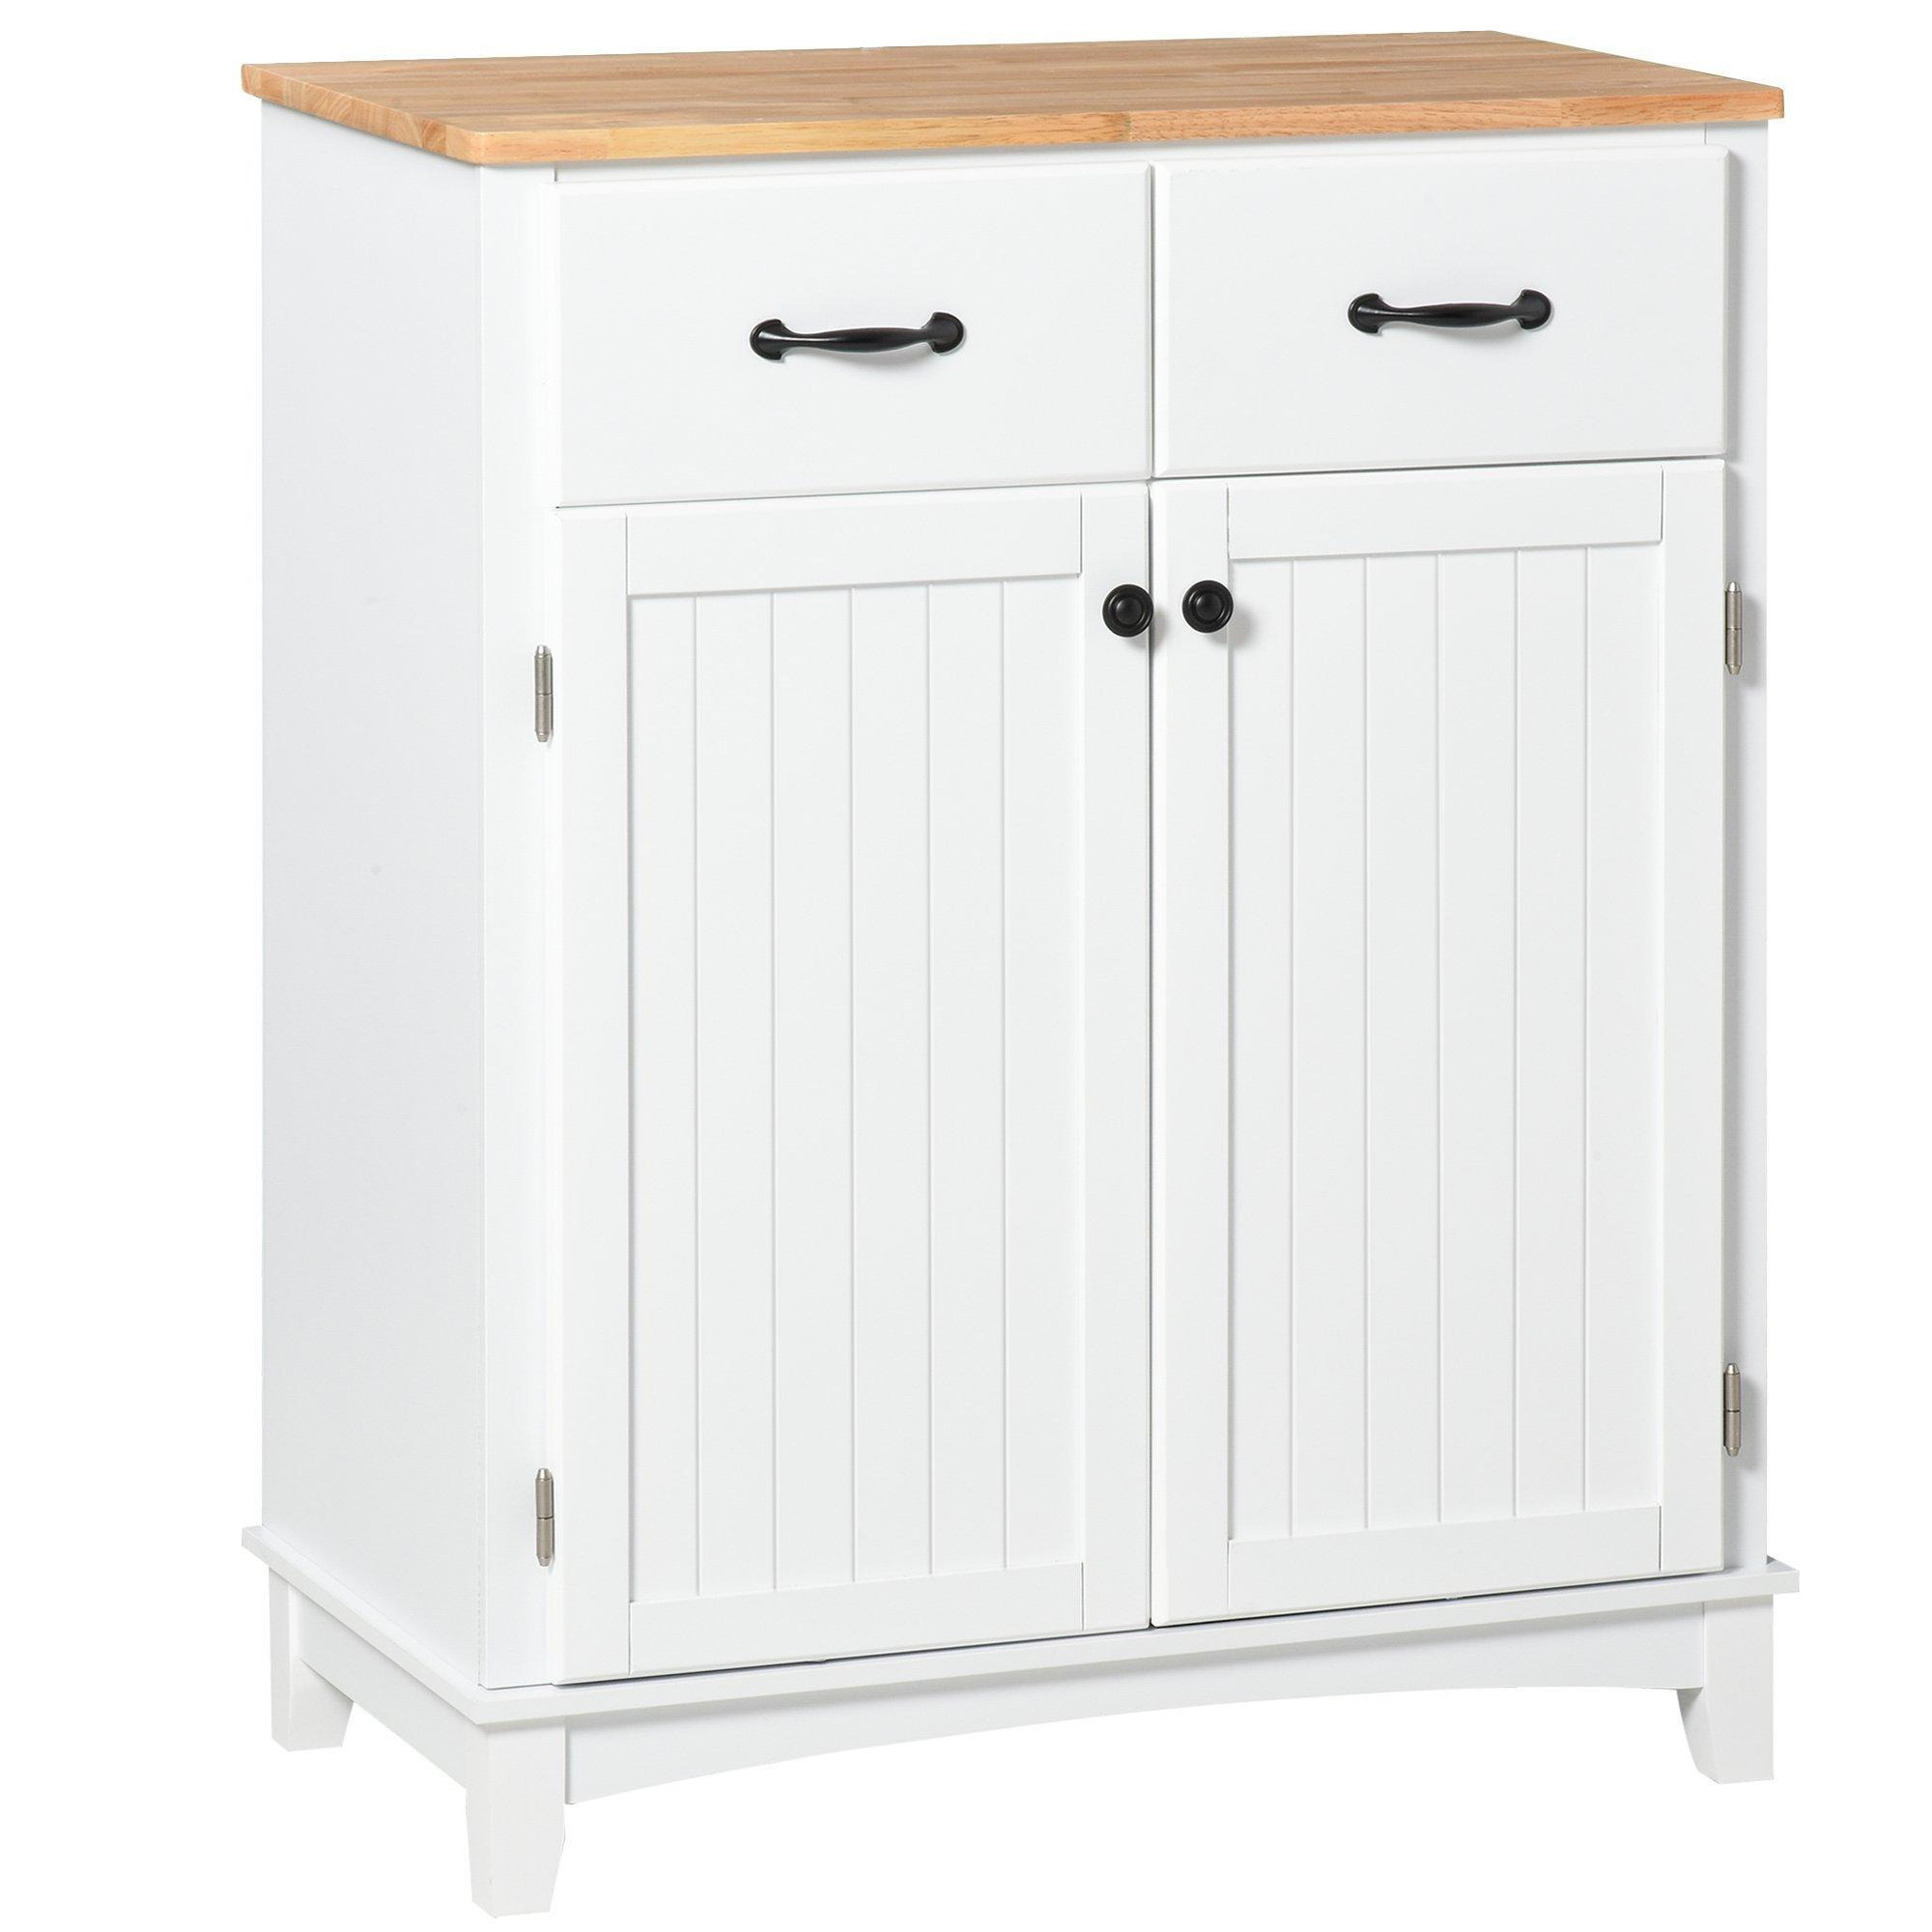 Modern Sideboard Kitchen Storage Cabinet Drawer Living Dining Room - image 1